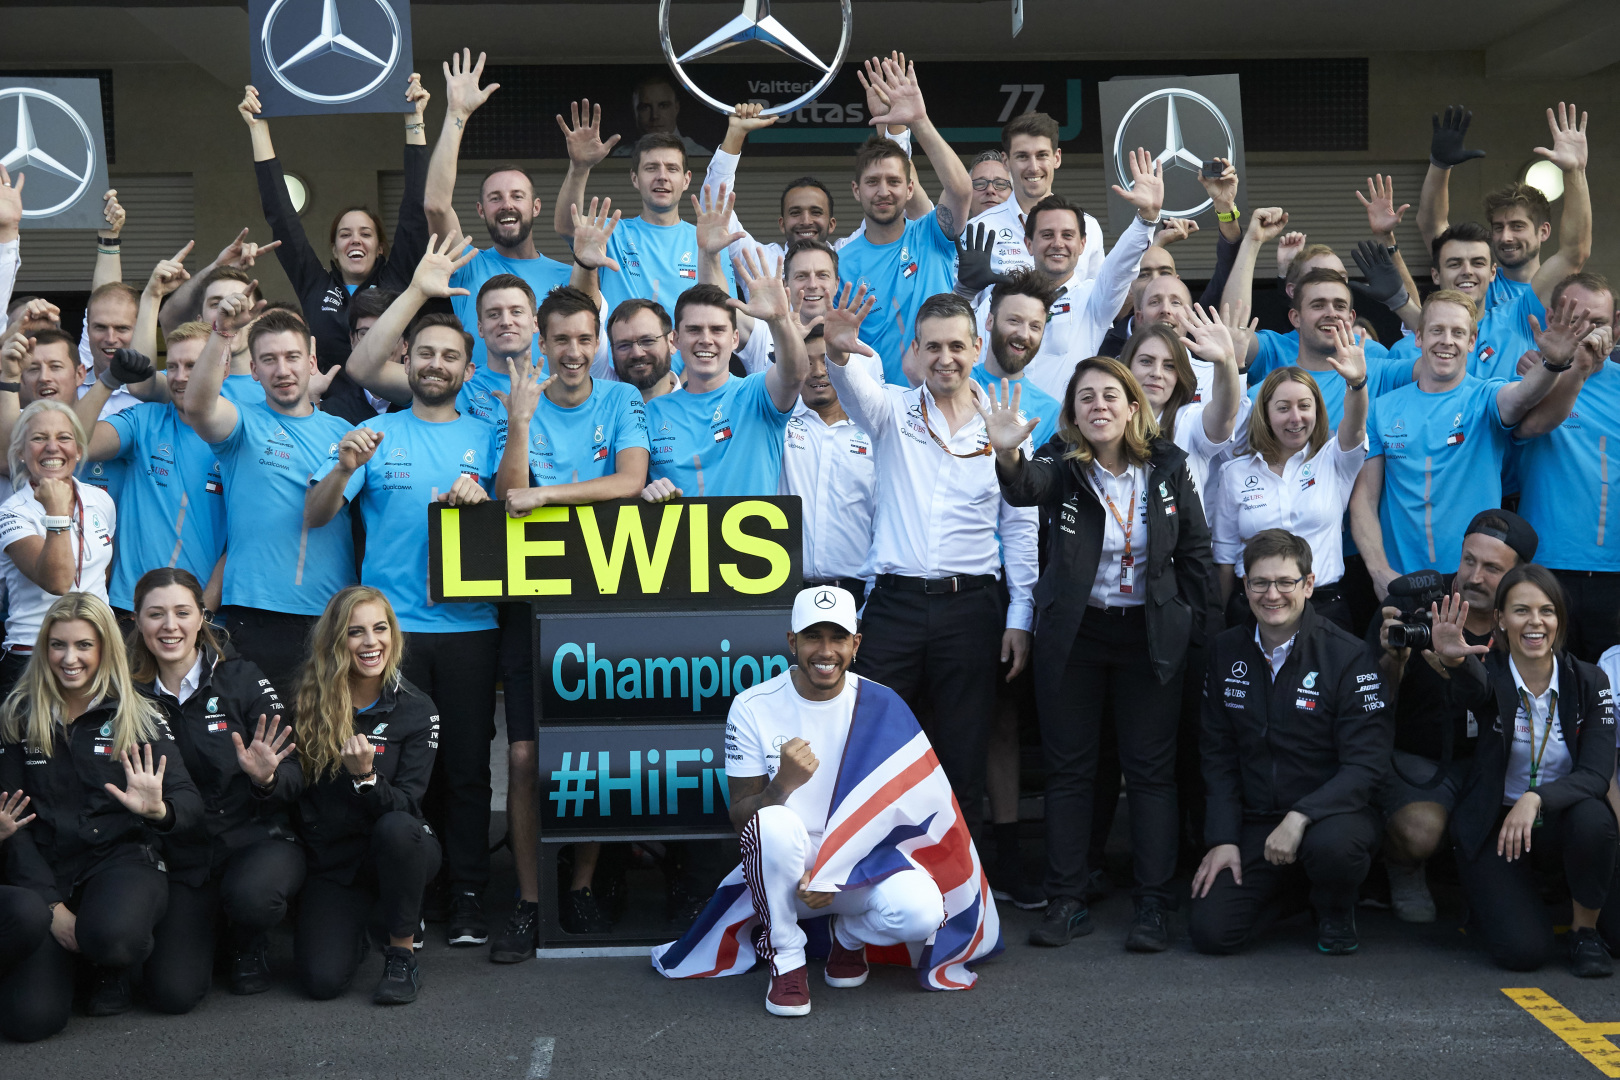 P. Lowe: pralaimėjęs N. Rosbergui, L. Hamiltonas tapo stipresniu pilotu